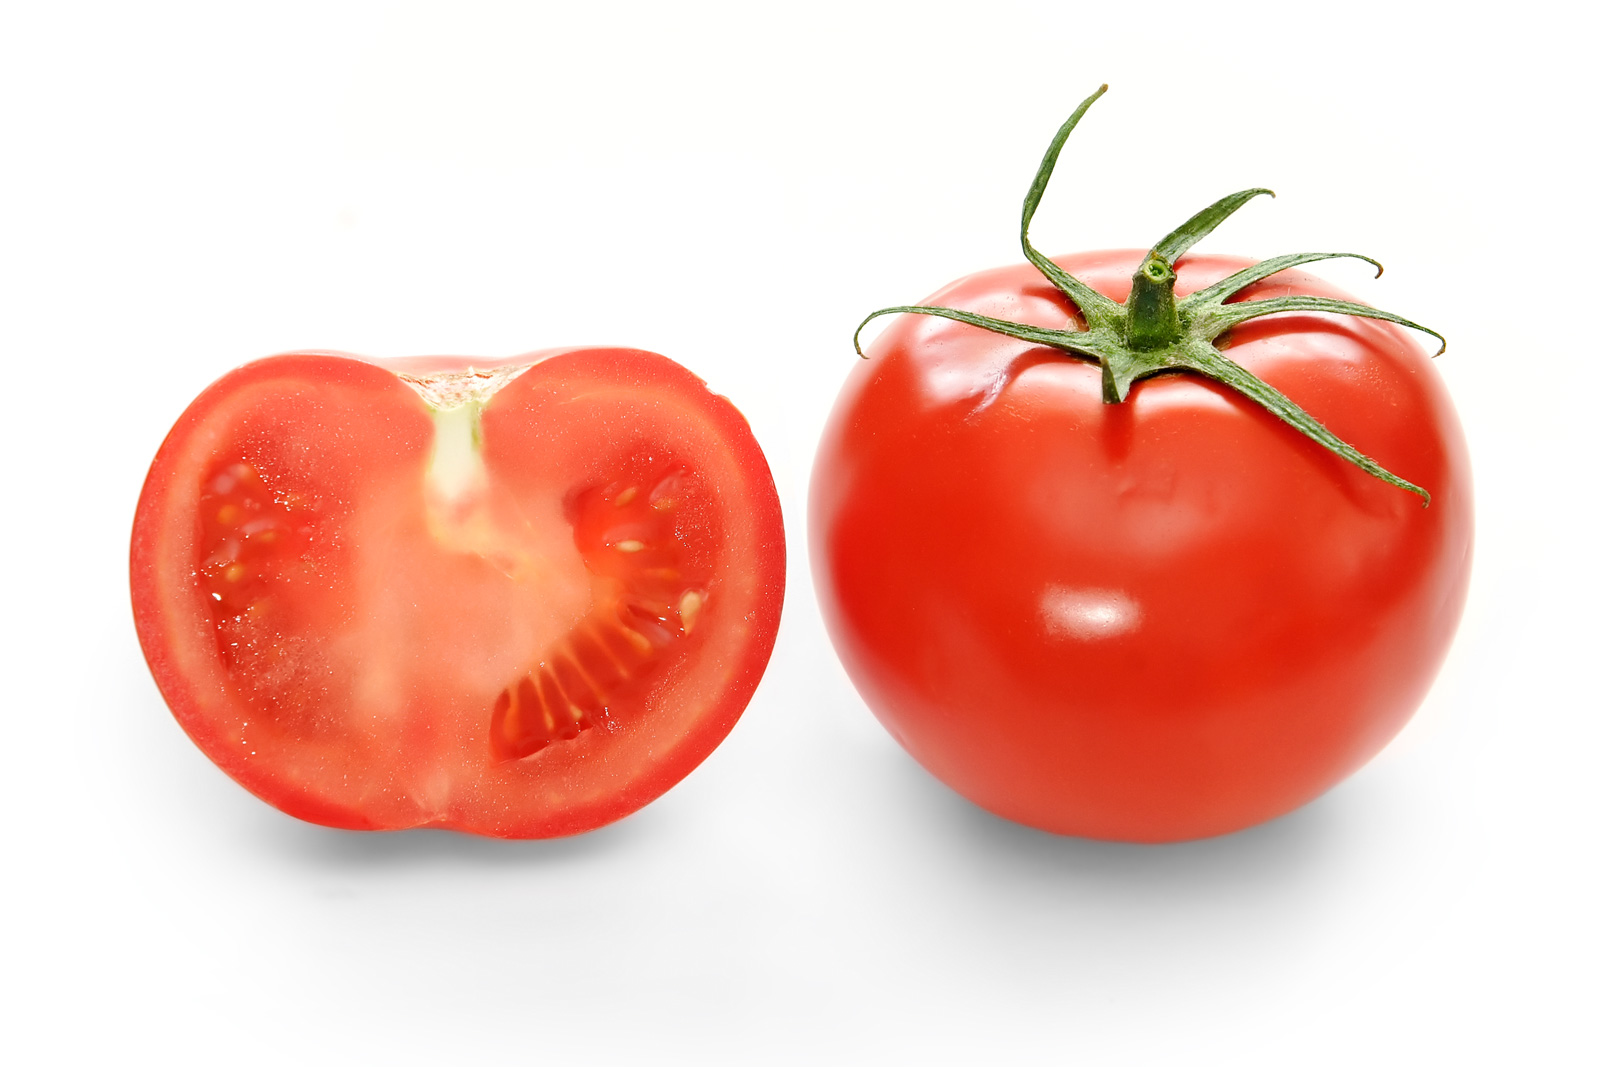 Hàm lượng vitamin A, E trong cà chua rất lớn, chúng loại bỏ bụi bẩn trên da và cung cấp năng lượng thiết yếu cho các vết sẹo mau lành